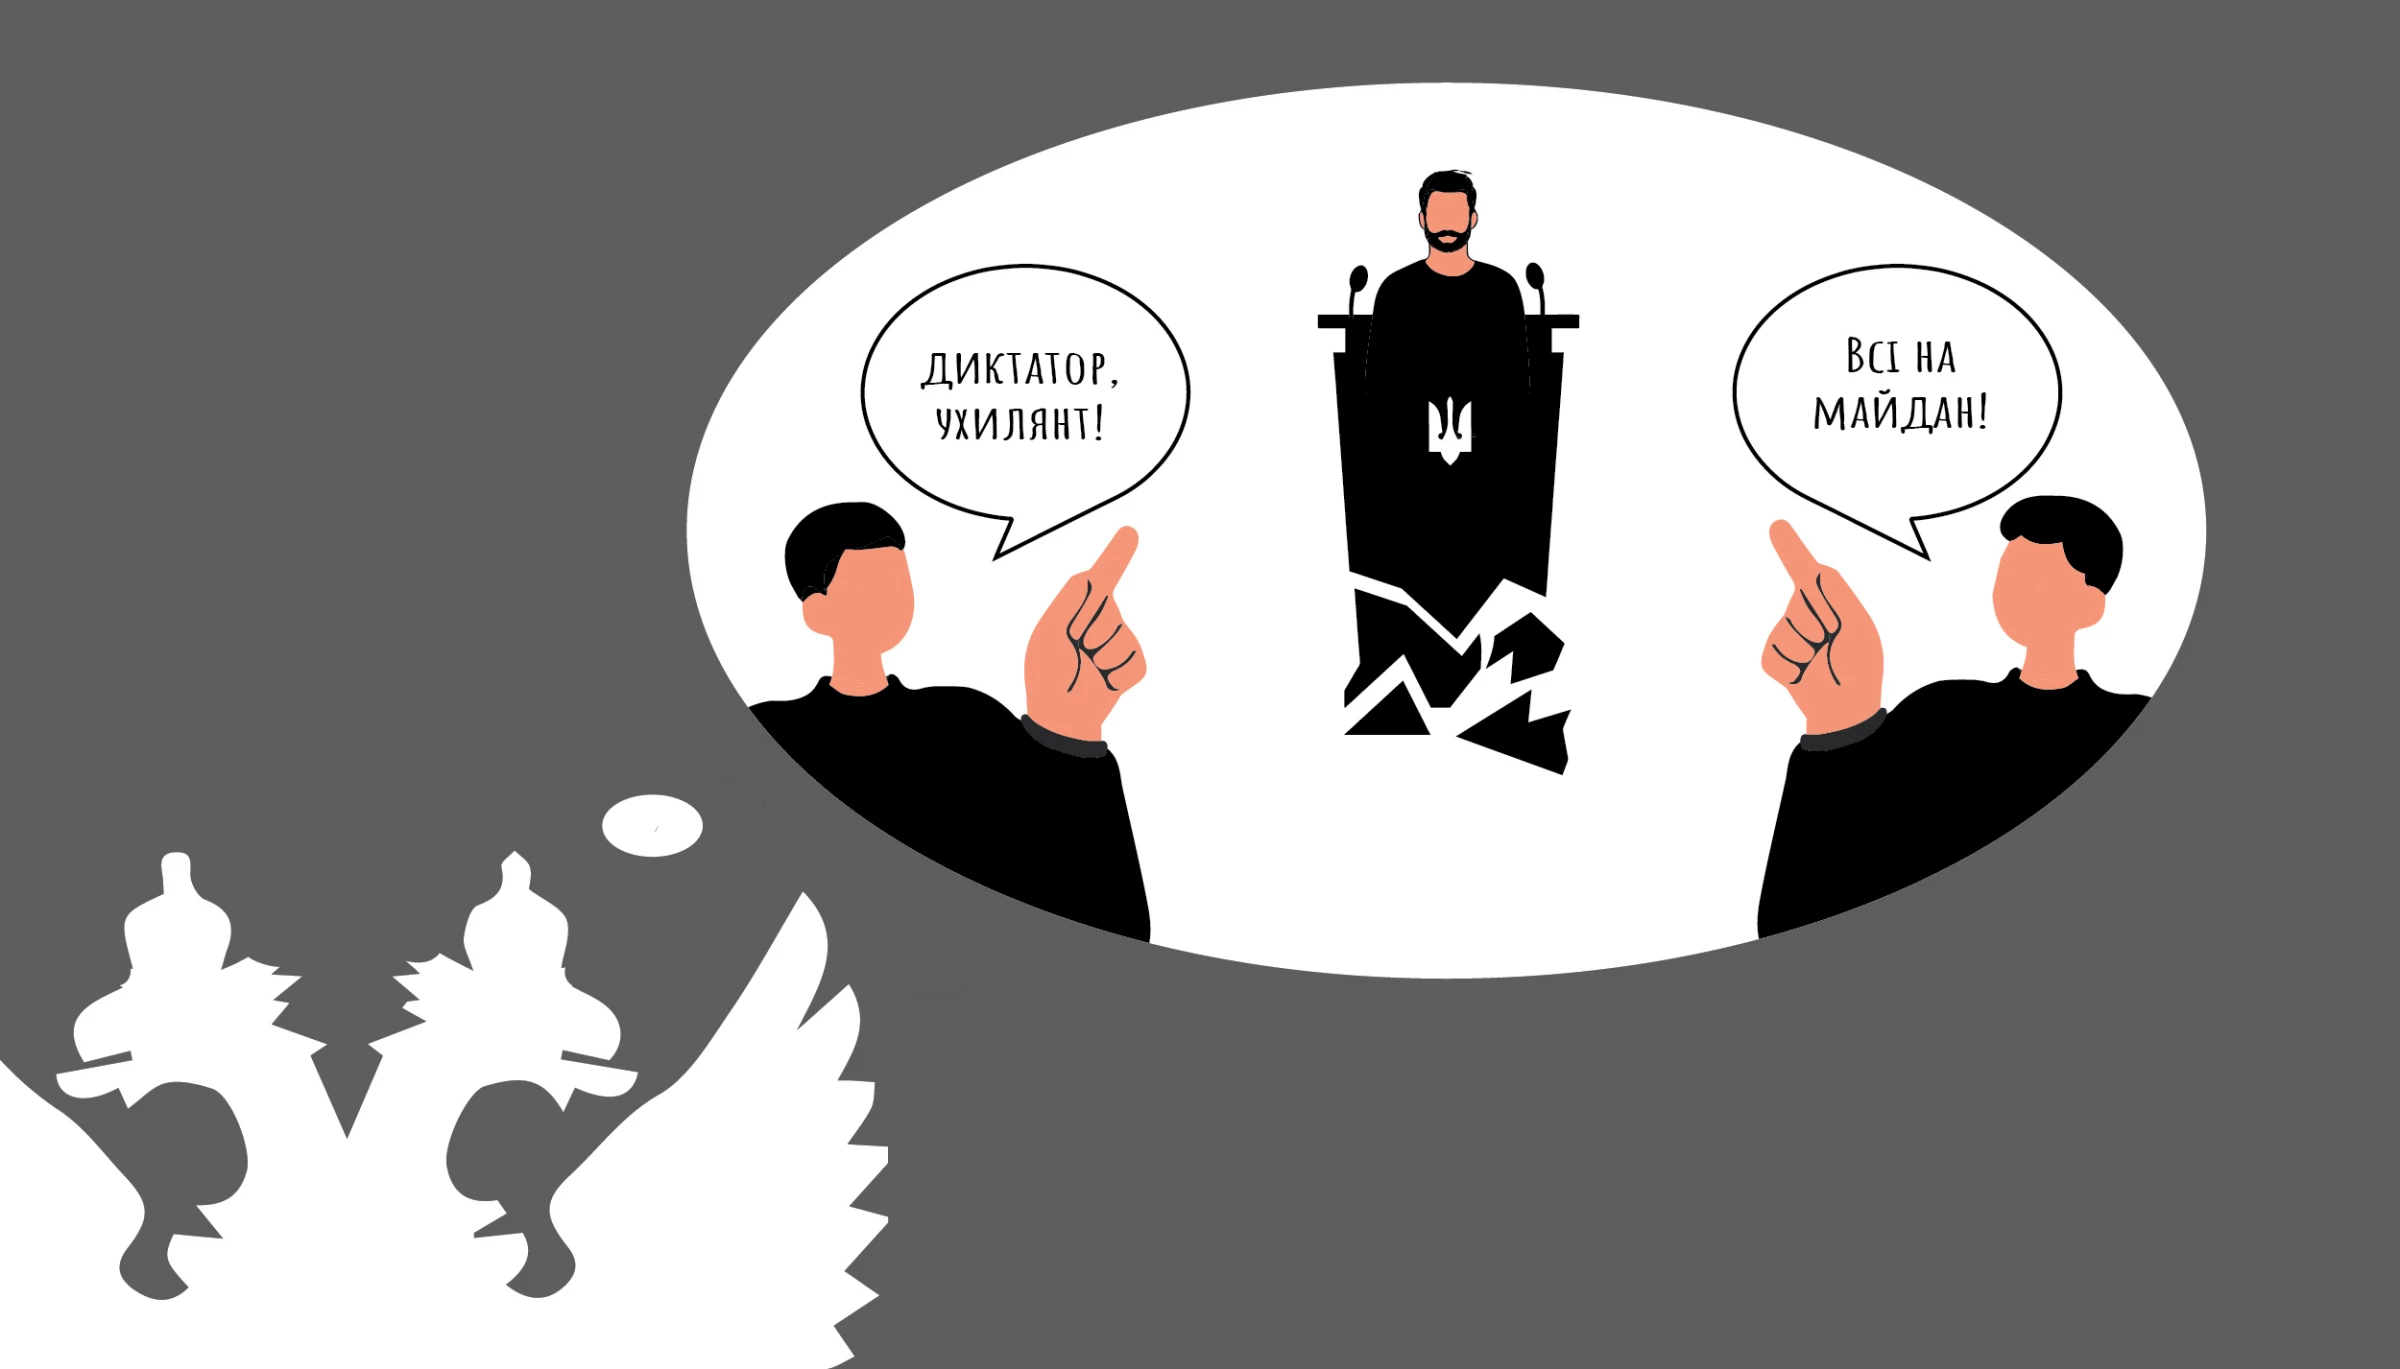 «Свідки нелегітимності Зеленського». Як через тікток, телеграм і з виплатами за участь у протестах на 21 травня готують «Майдан-3»